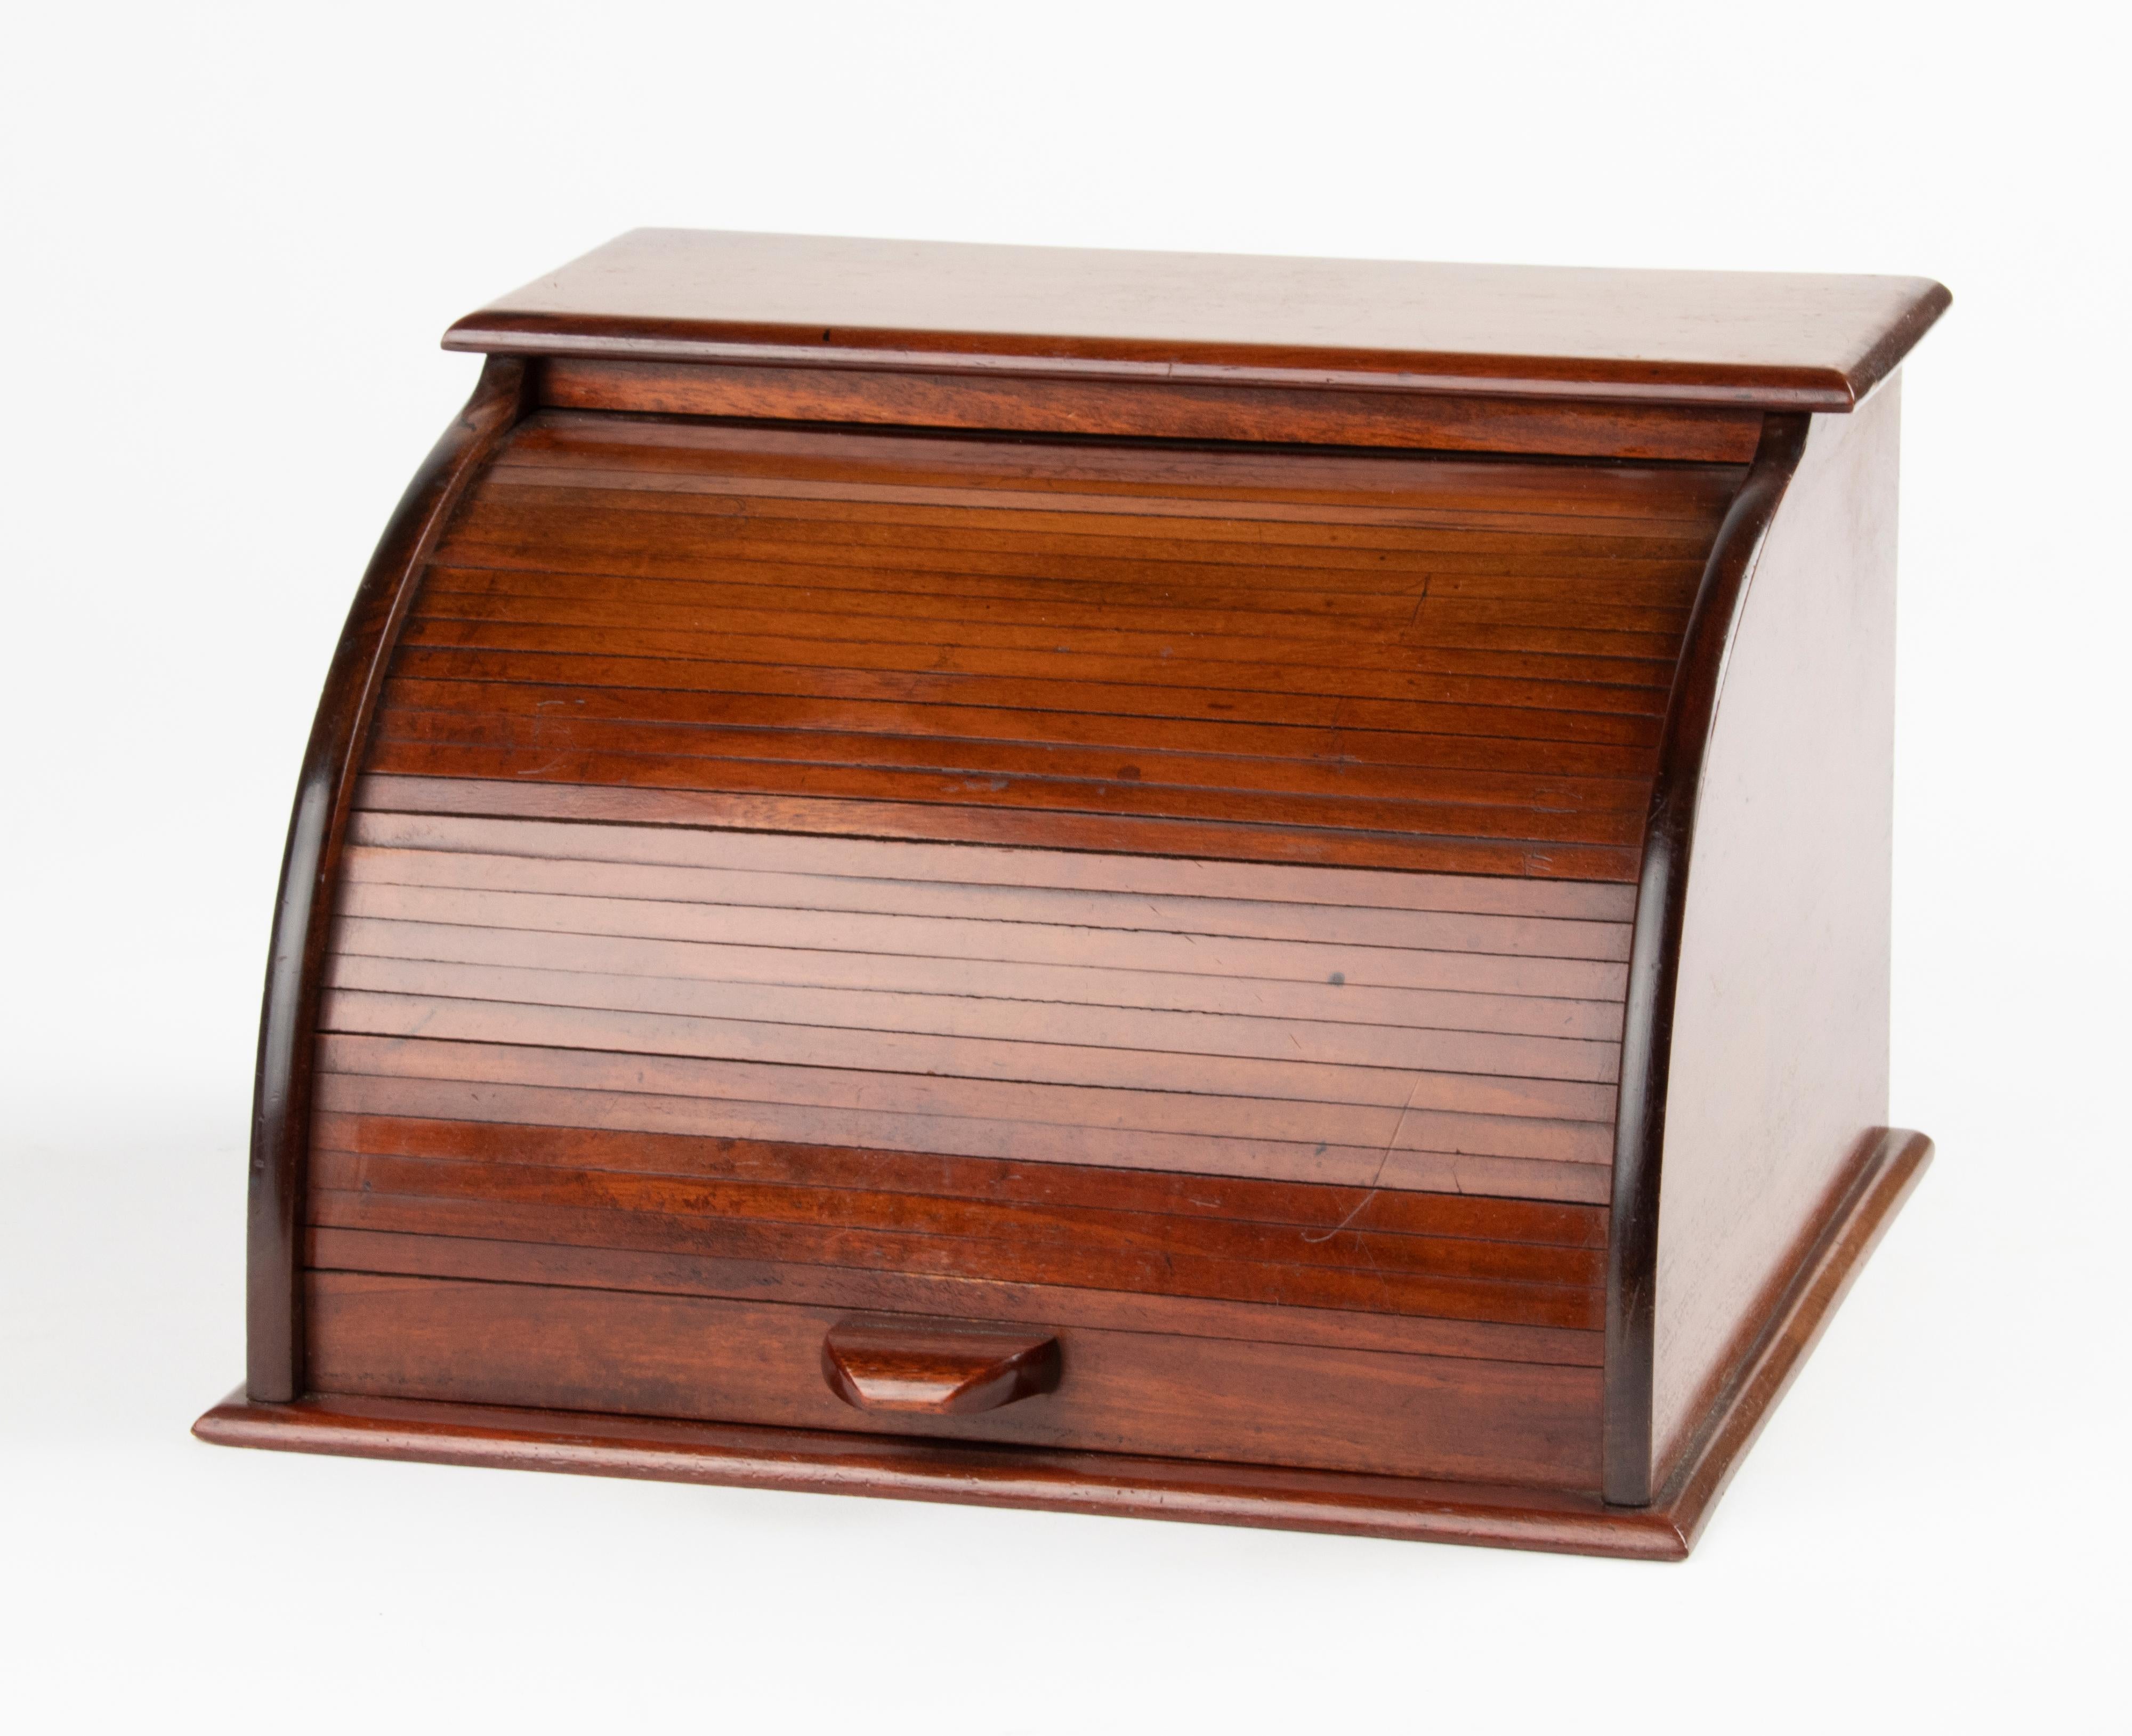 Schöne antike Box für Briefe / Dokumente mit einer Rollladentür. Die Kiste ist aus Holz gefertigt. Die Rolltür ist in gutem Zustand und lässt sich leichtgängig öffnen. Hergestellt in Frankreich, ca. 1880-1890.